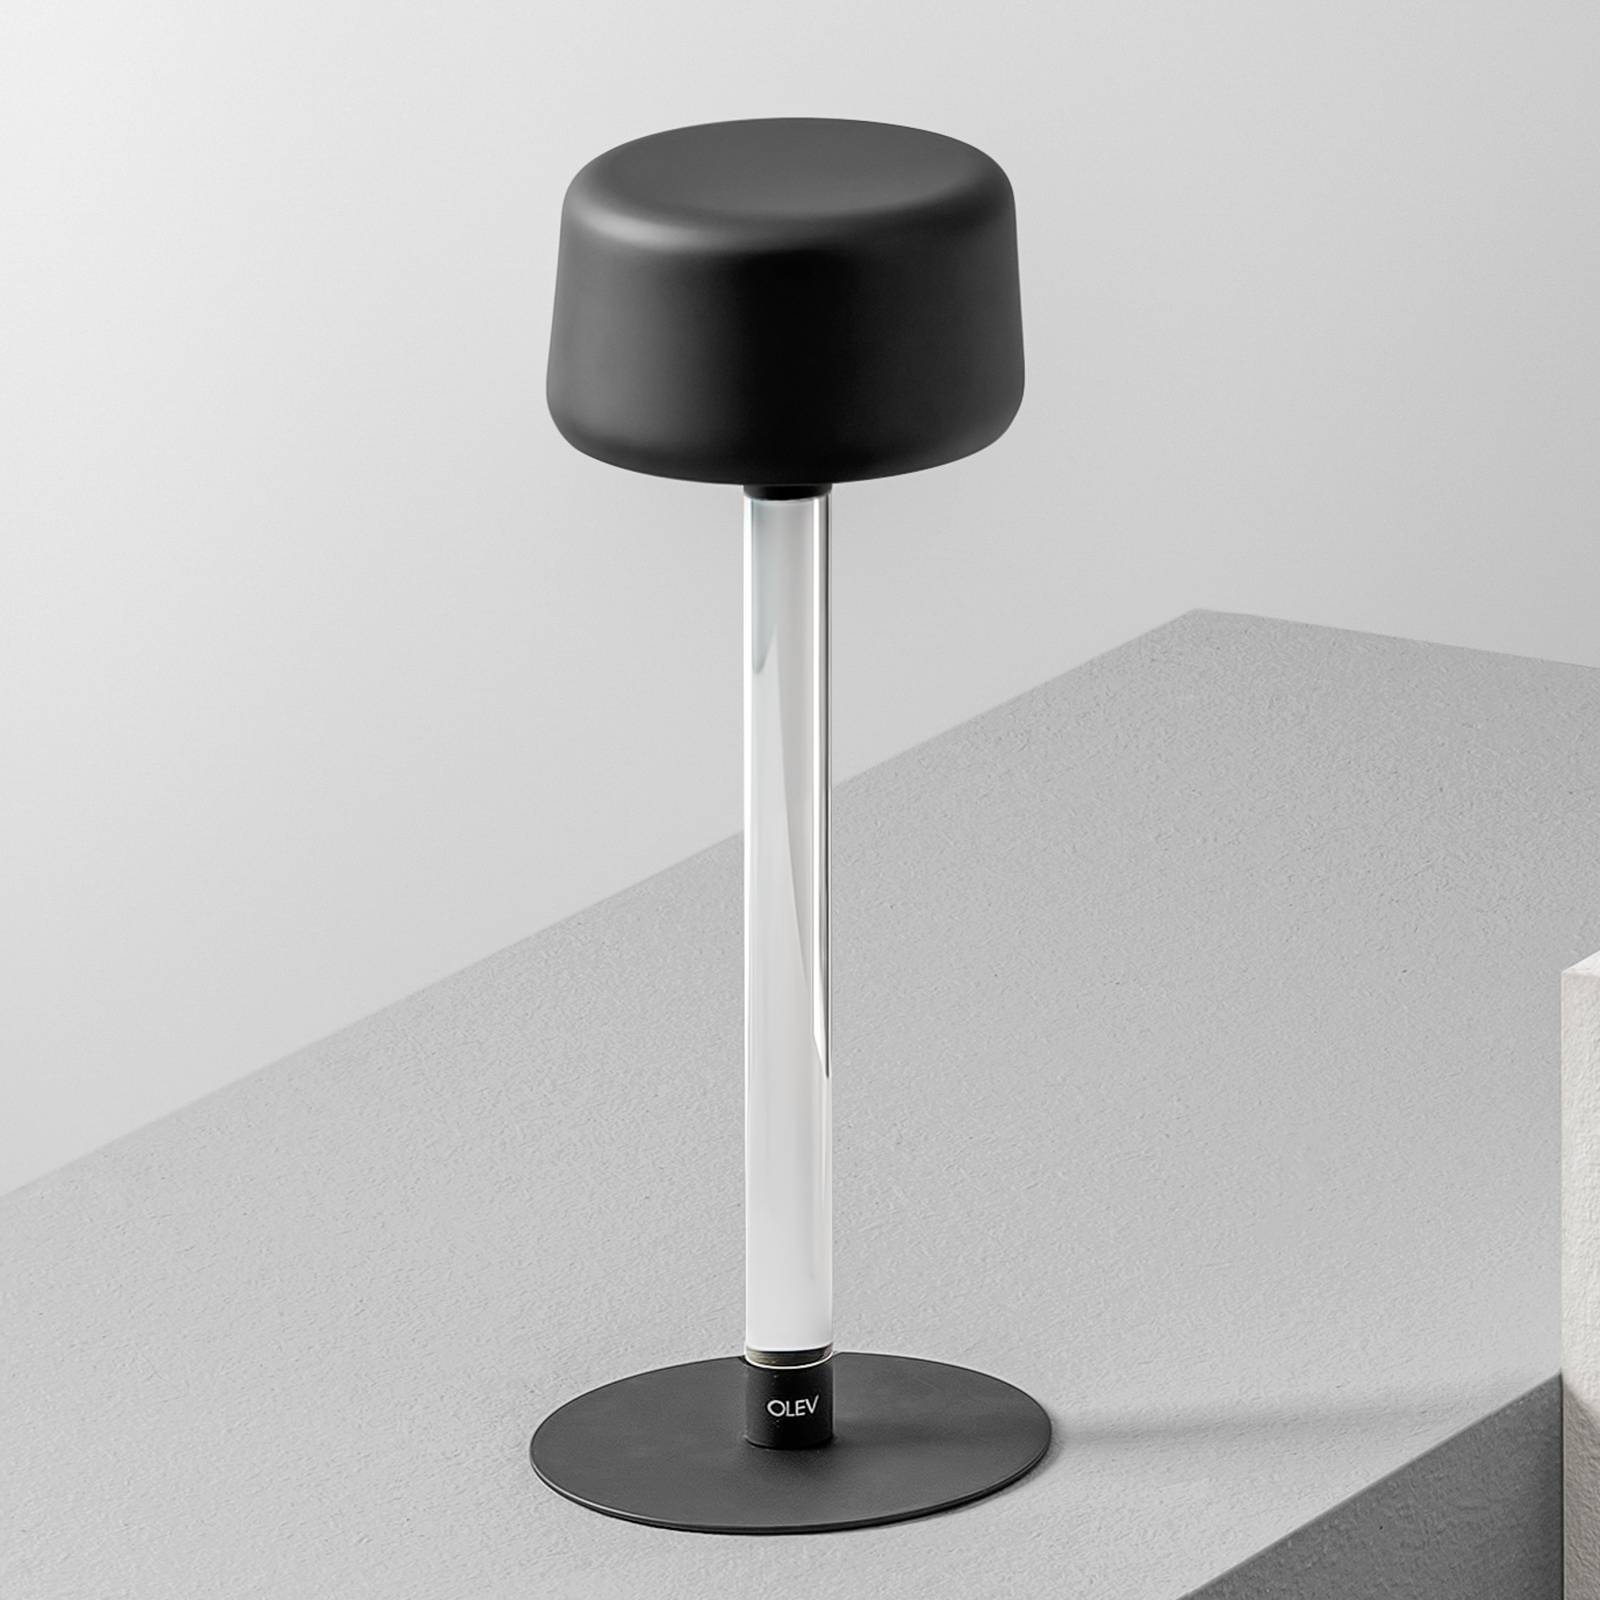 OleV Designová stolní lampa OLEV Tee s dobíjecí baterií, černá